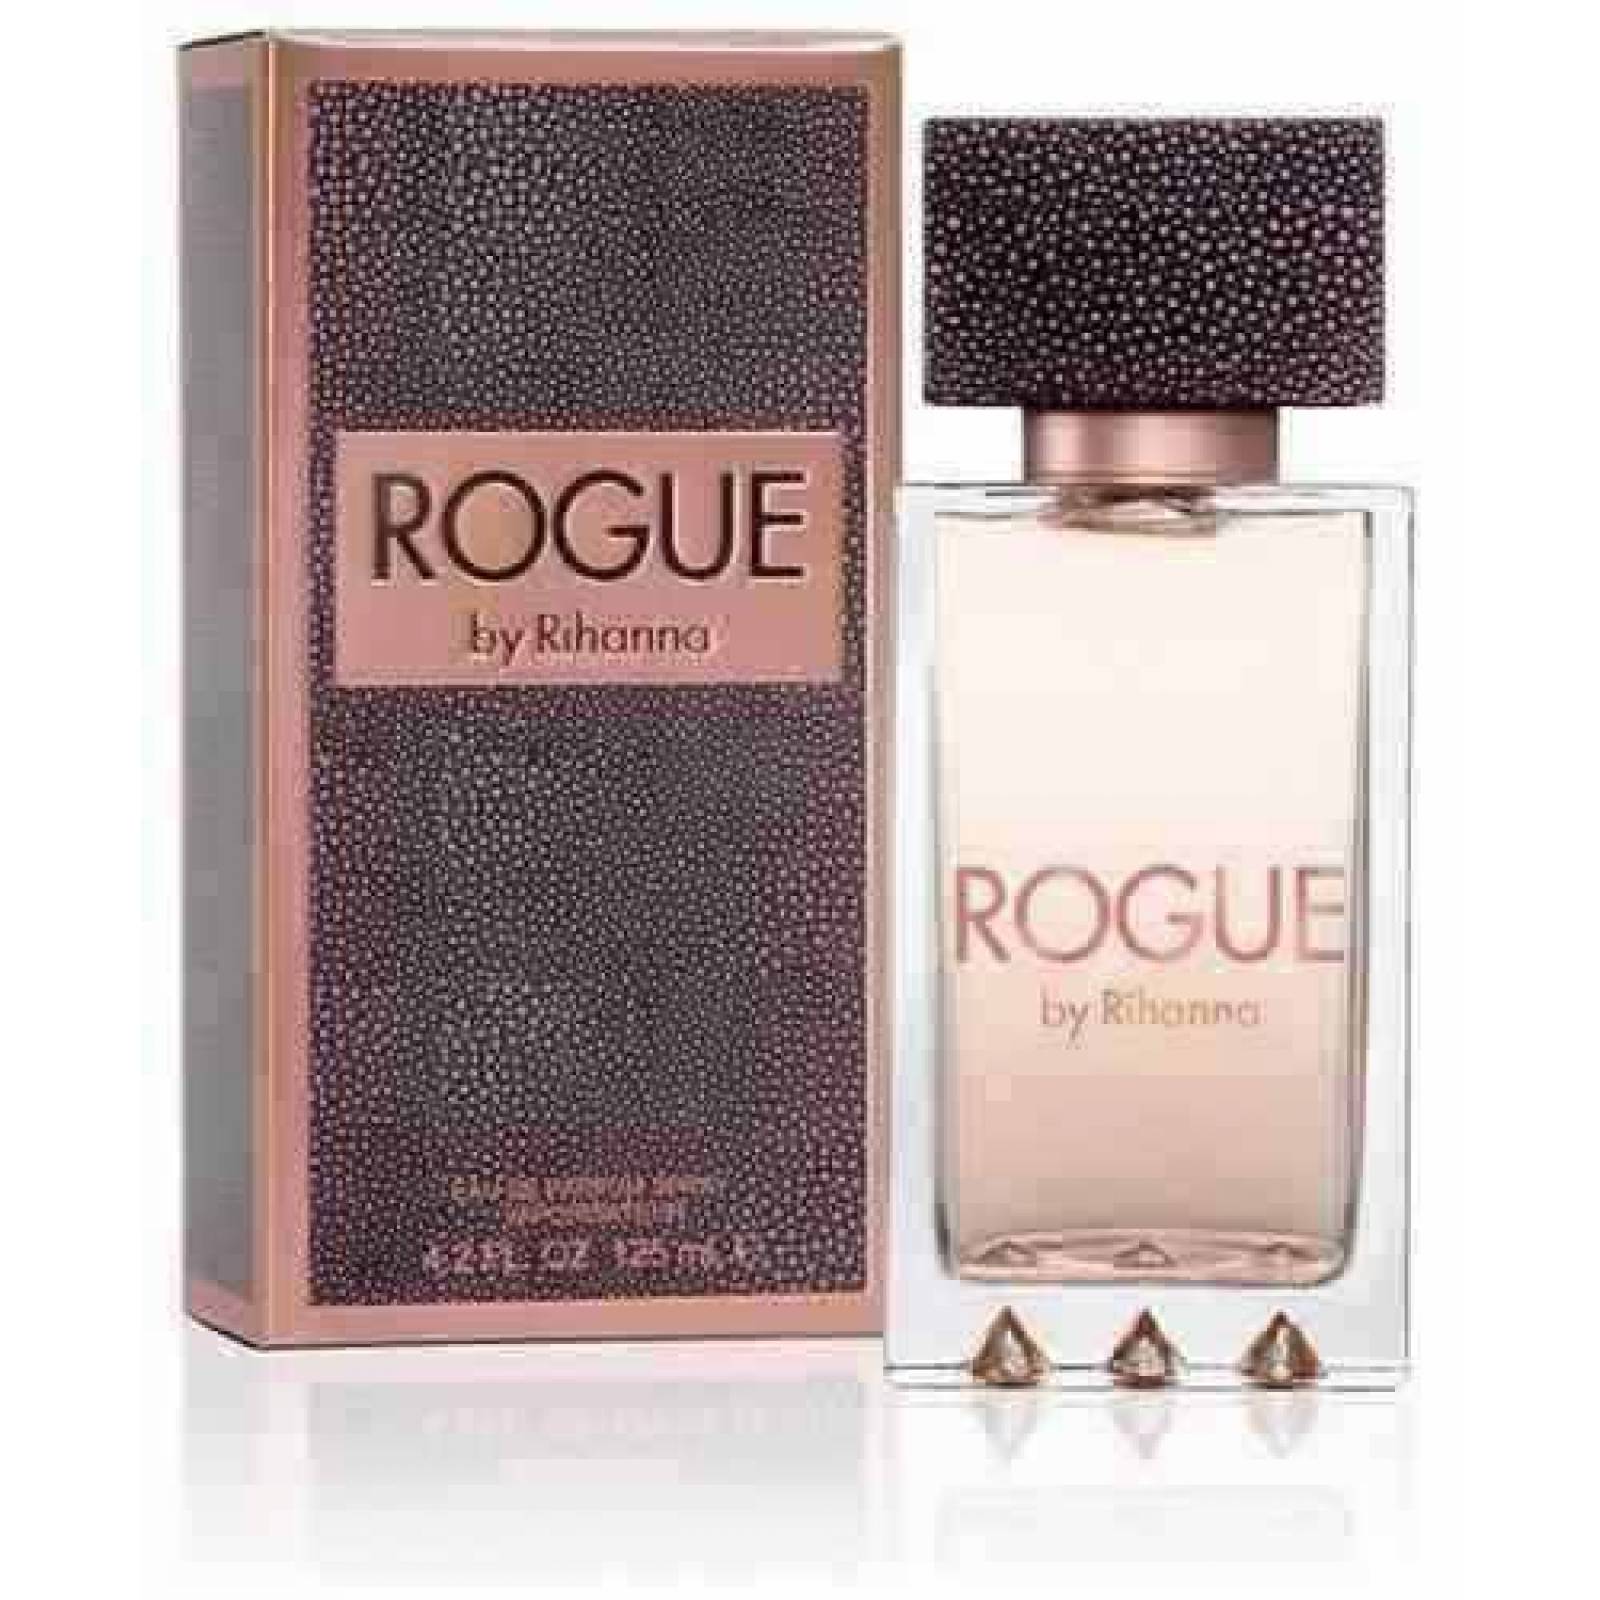 Rogue Dama Rihanna 125 Ml Edp Spray - Perfume Original